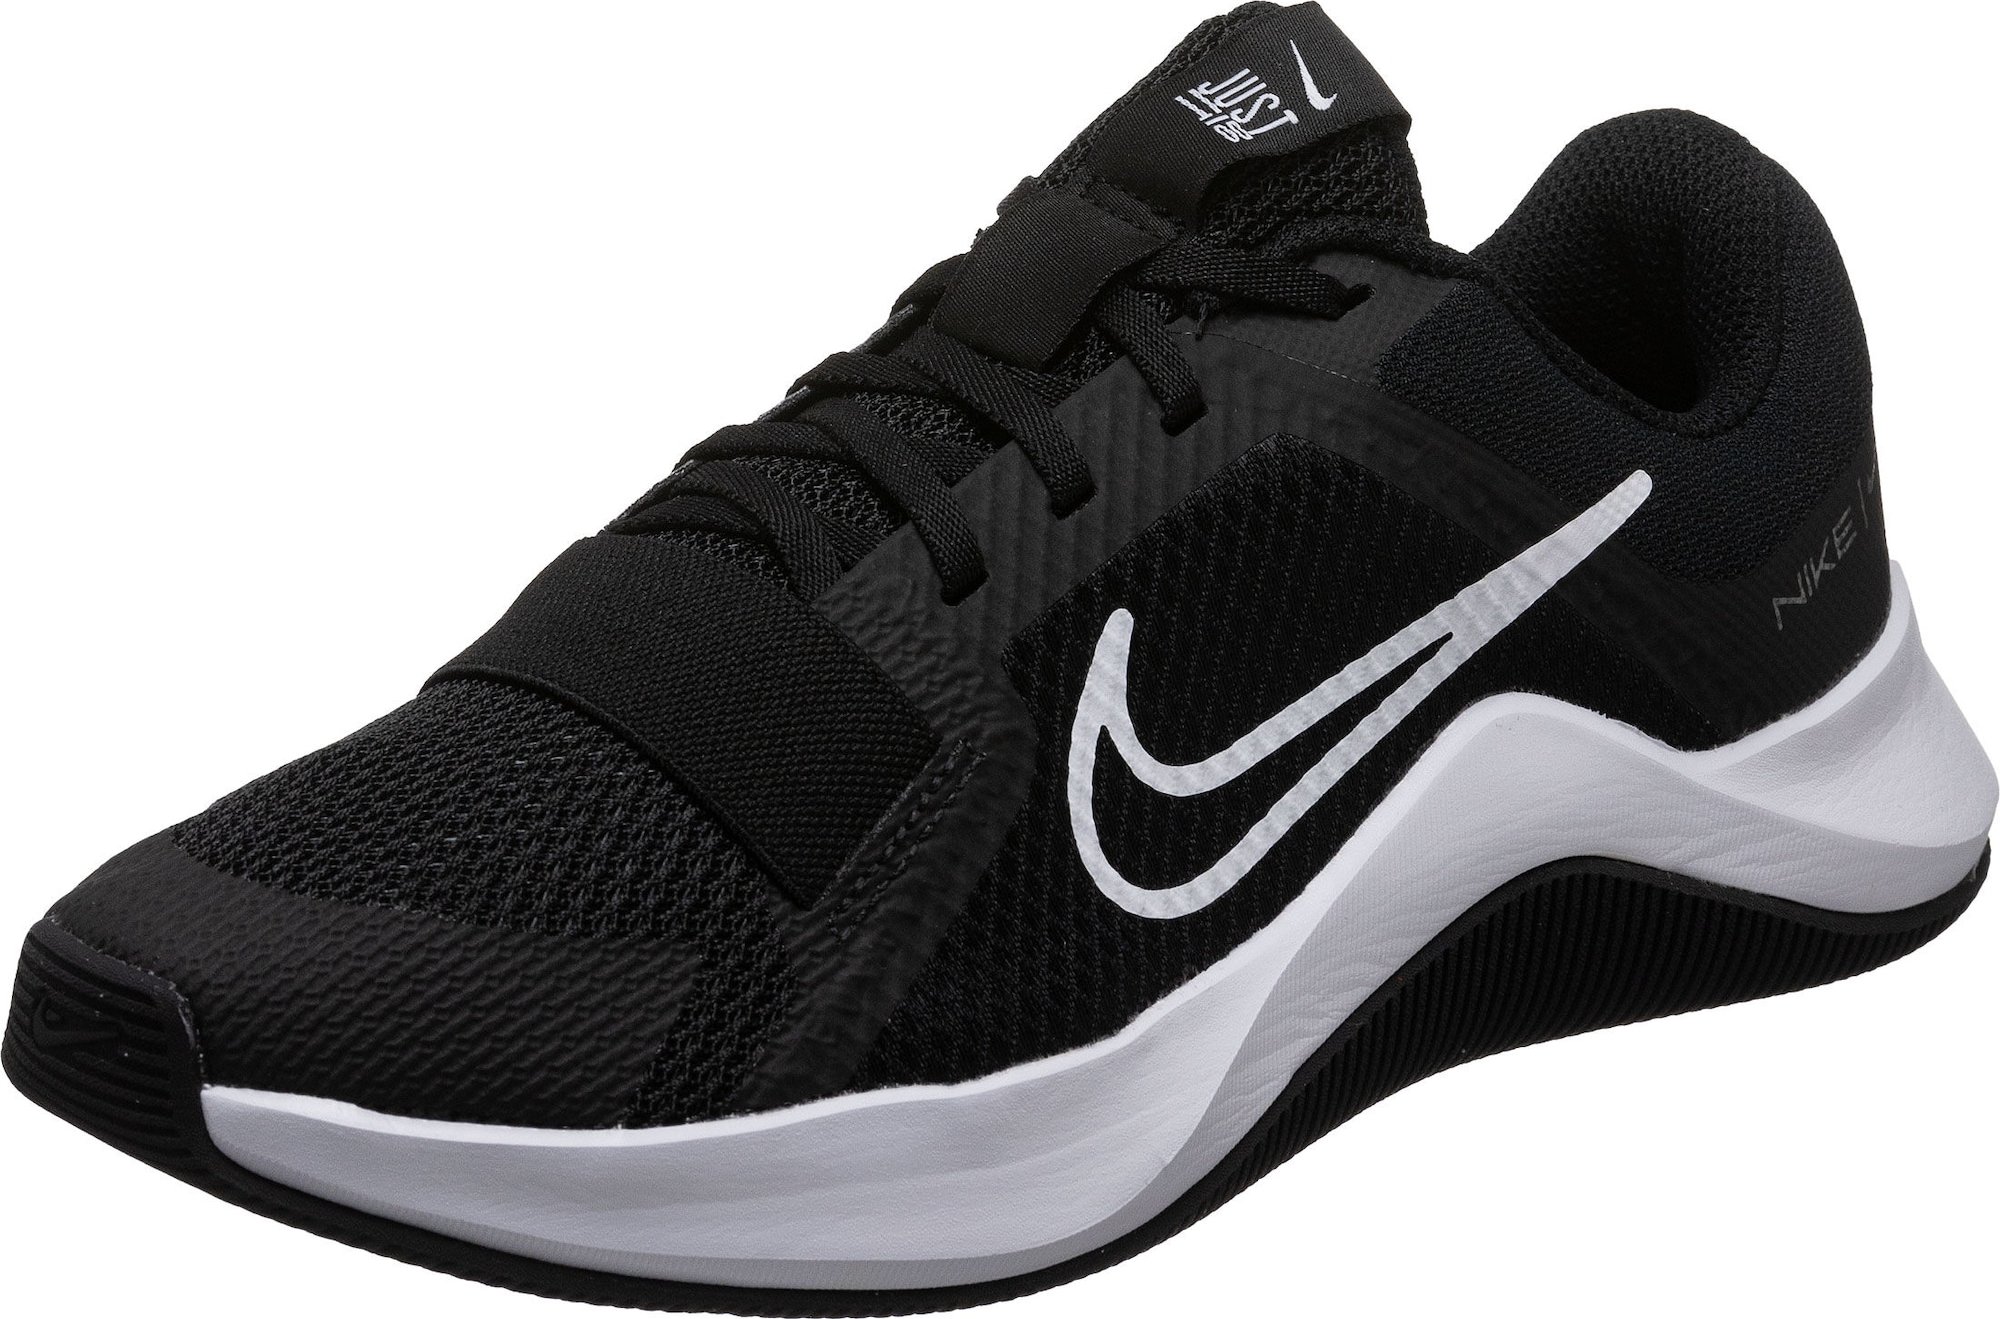 Sportovní boty 'City Trainer 2' Nike černá / bílá